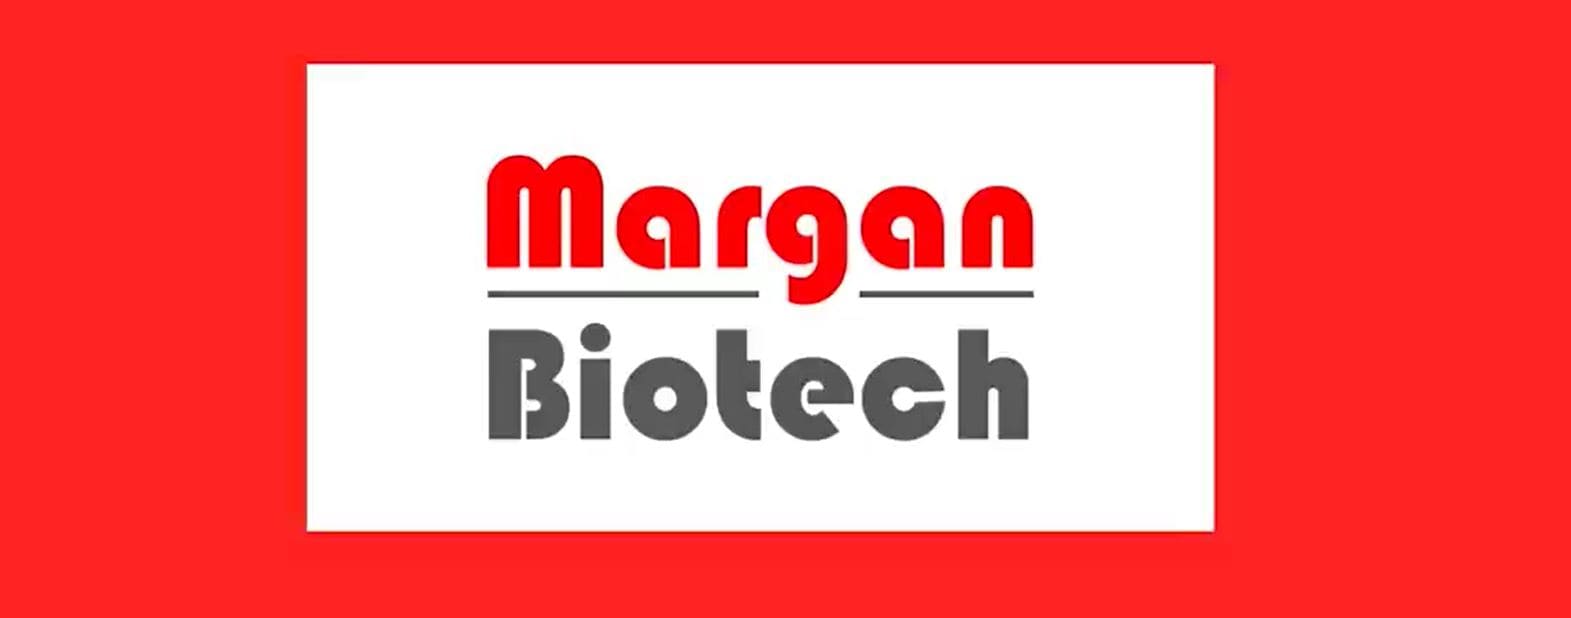 marca-margan-biotech-complementos-alimenticios